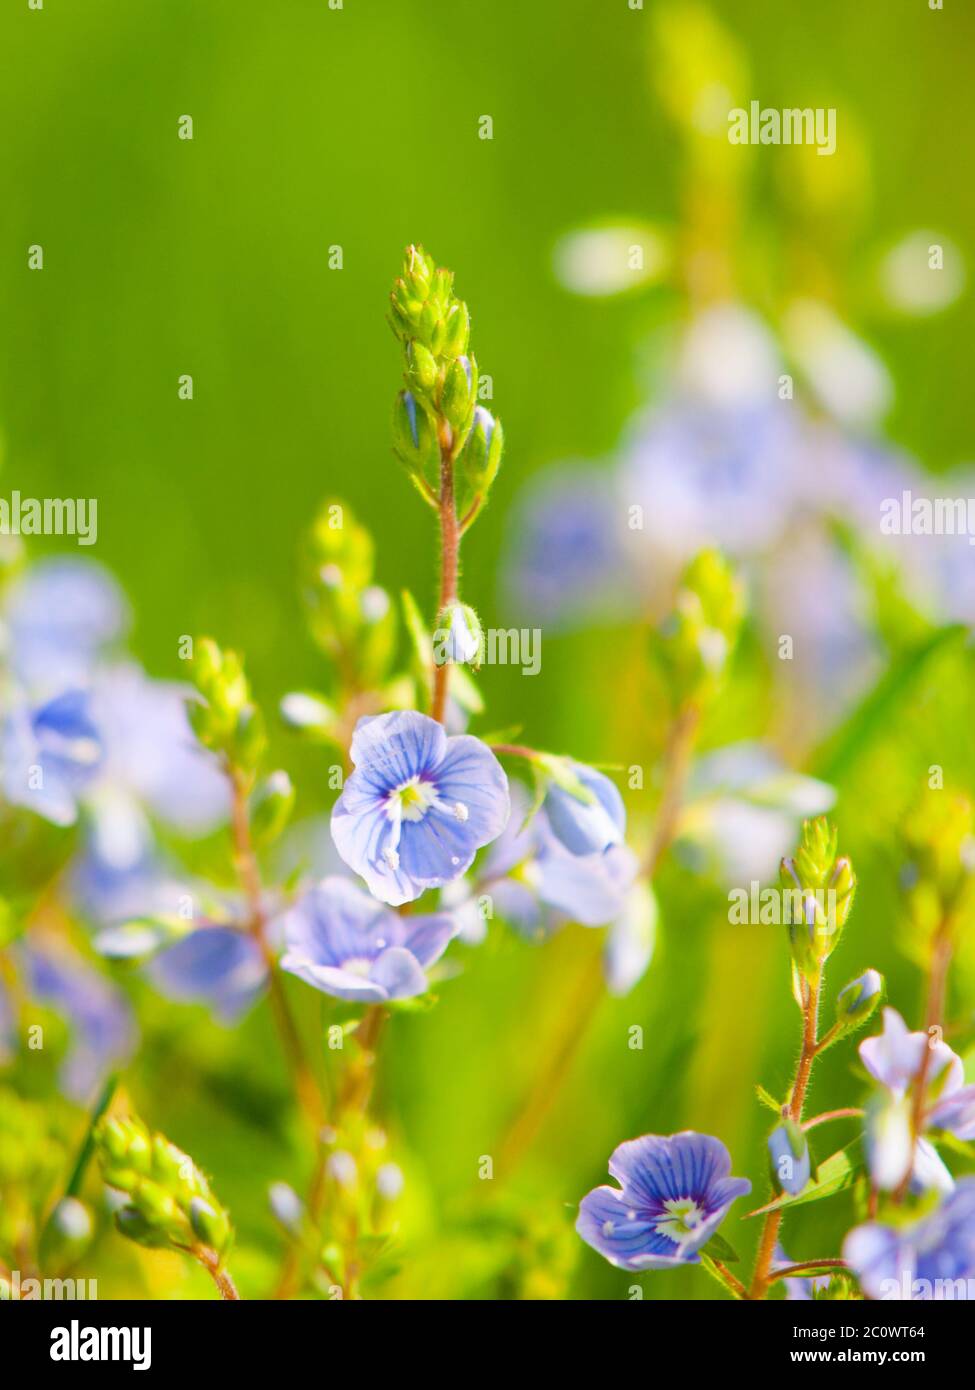 Natürliche Details mit winzigen blau-violetten Blüten und grünem Bokeh Hintergrund. Sonnentag im Frühling. Geringe Schärfentiefe. Stockfoto